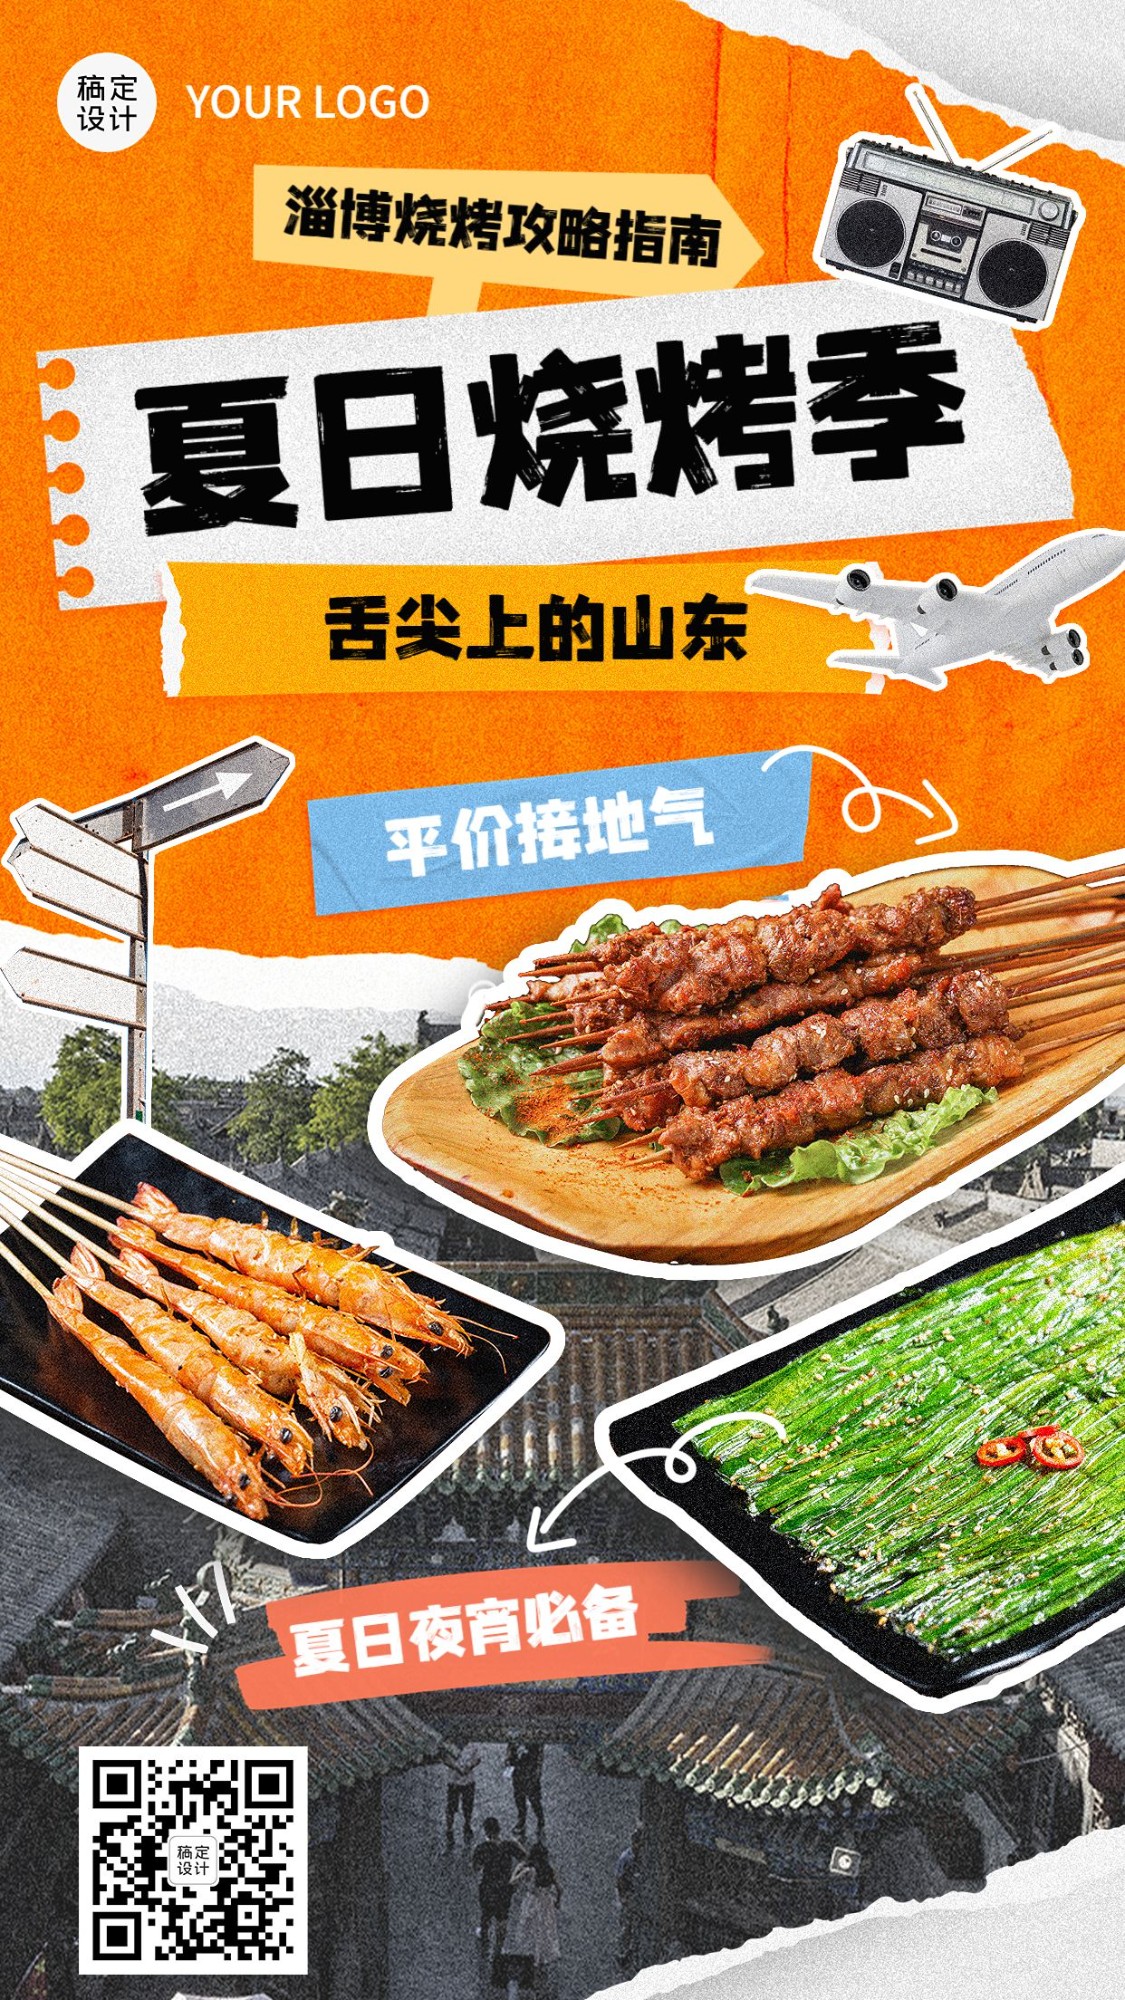 餐饮淄博烧烤产品营销手机海报